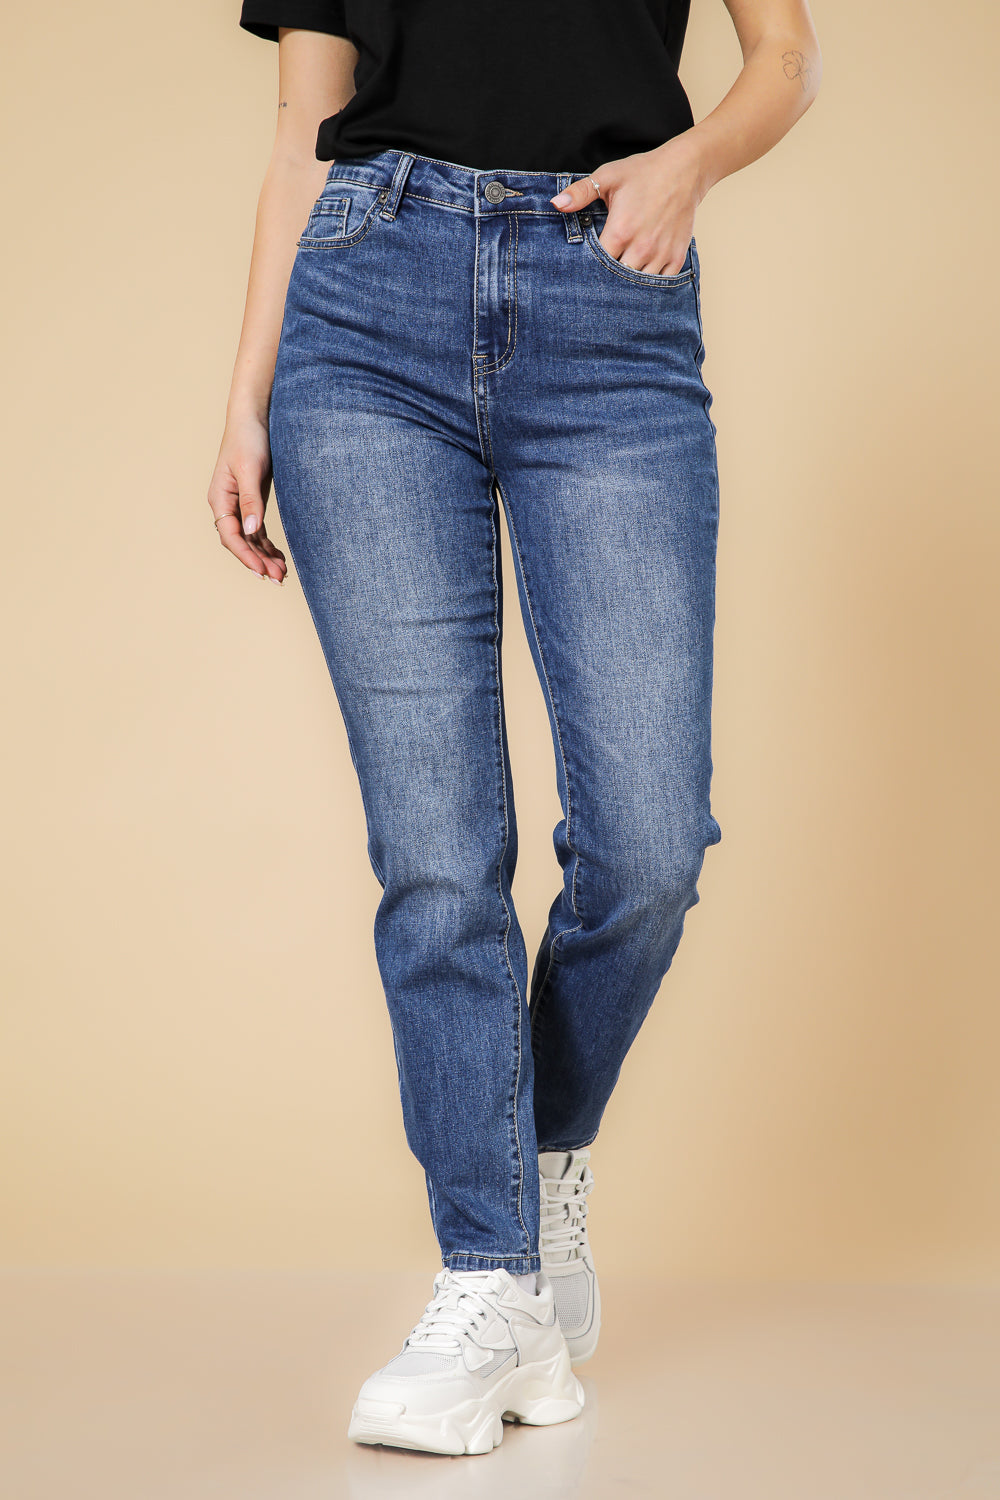 ג'ינס סקיני בצבע כחול בהיר